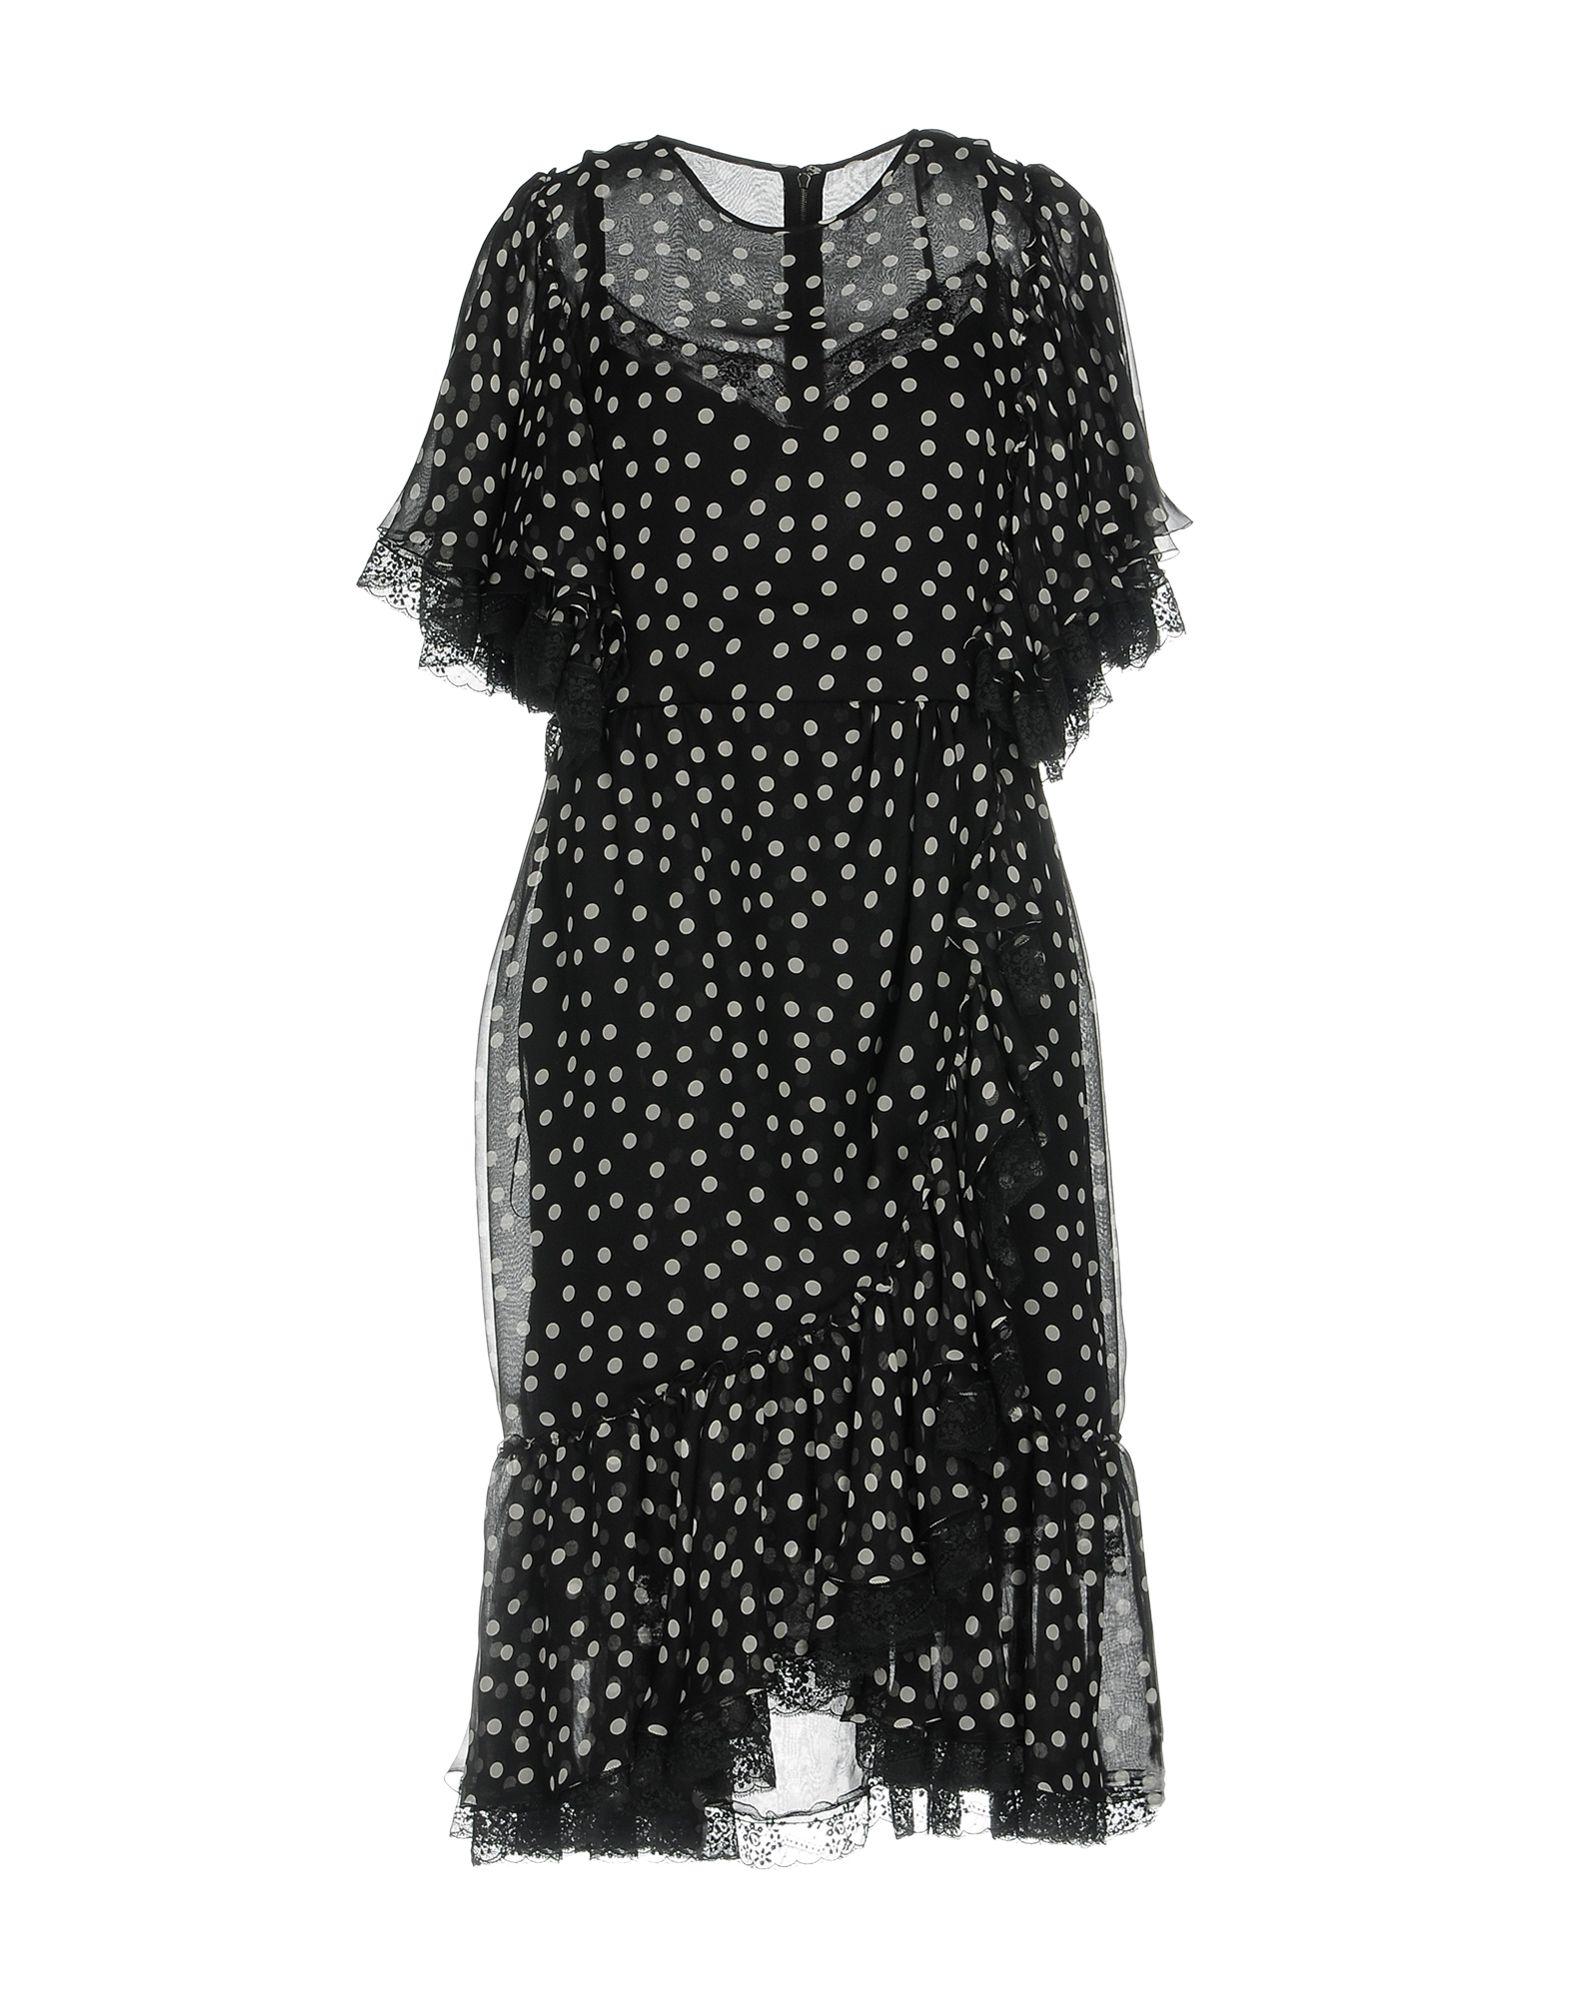 Платье Дольче Габбана в горох черное